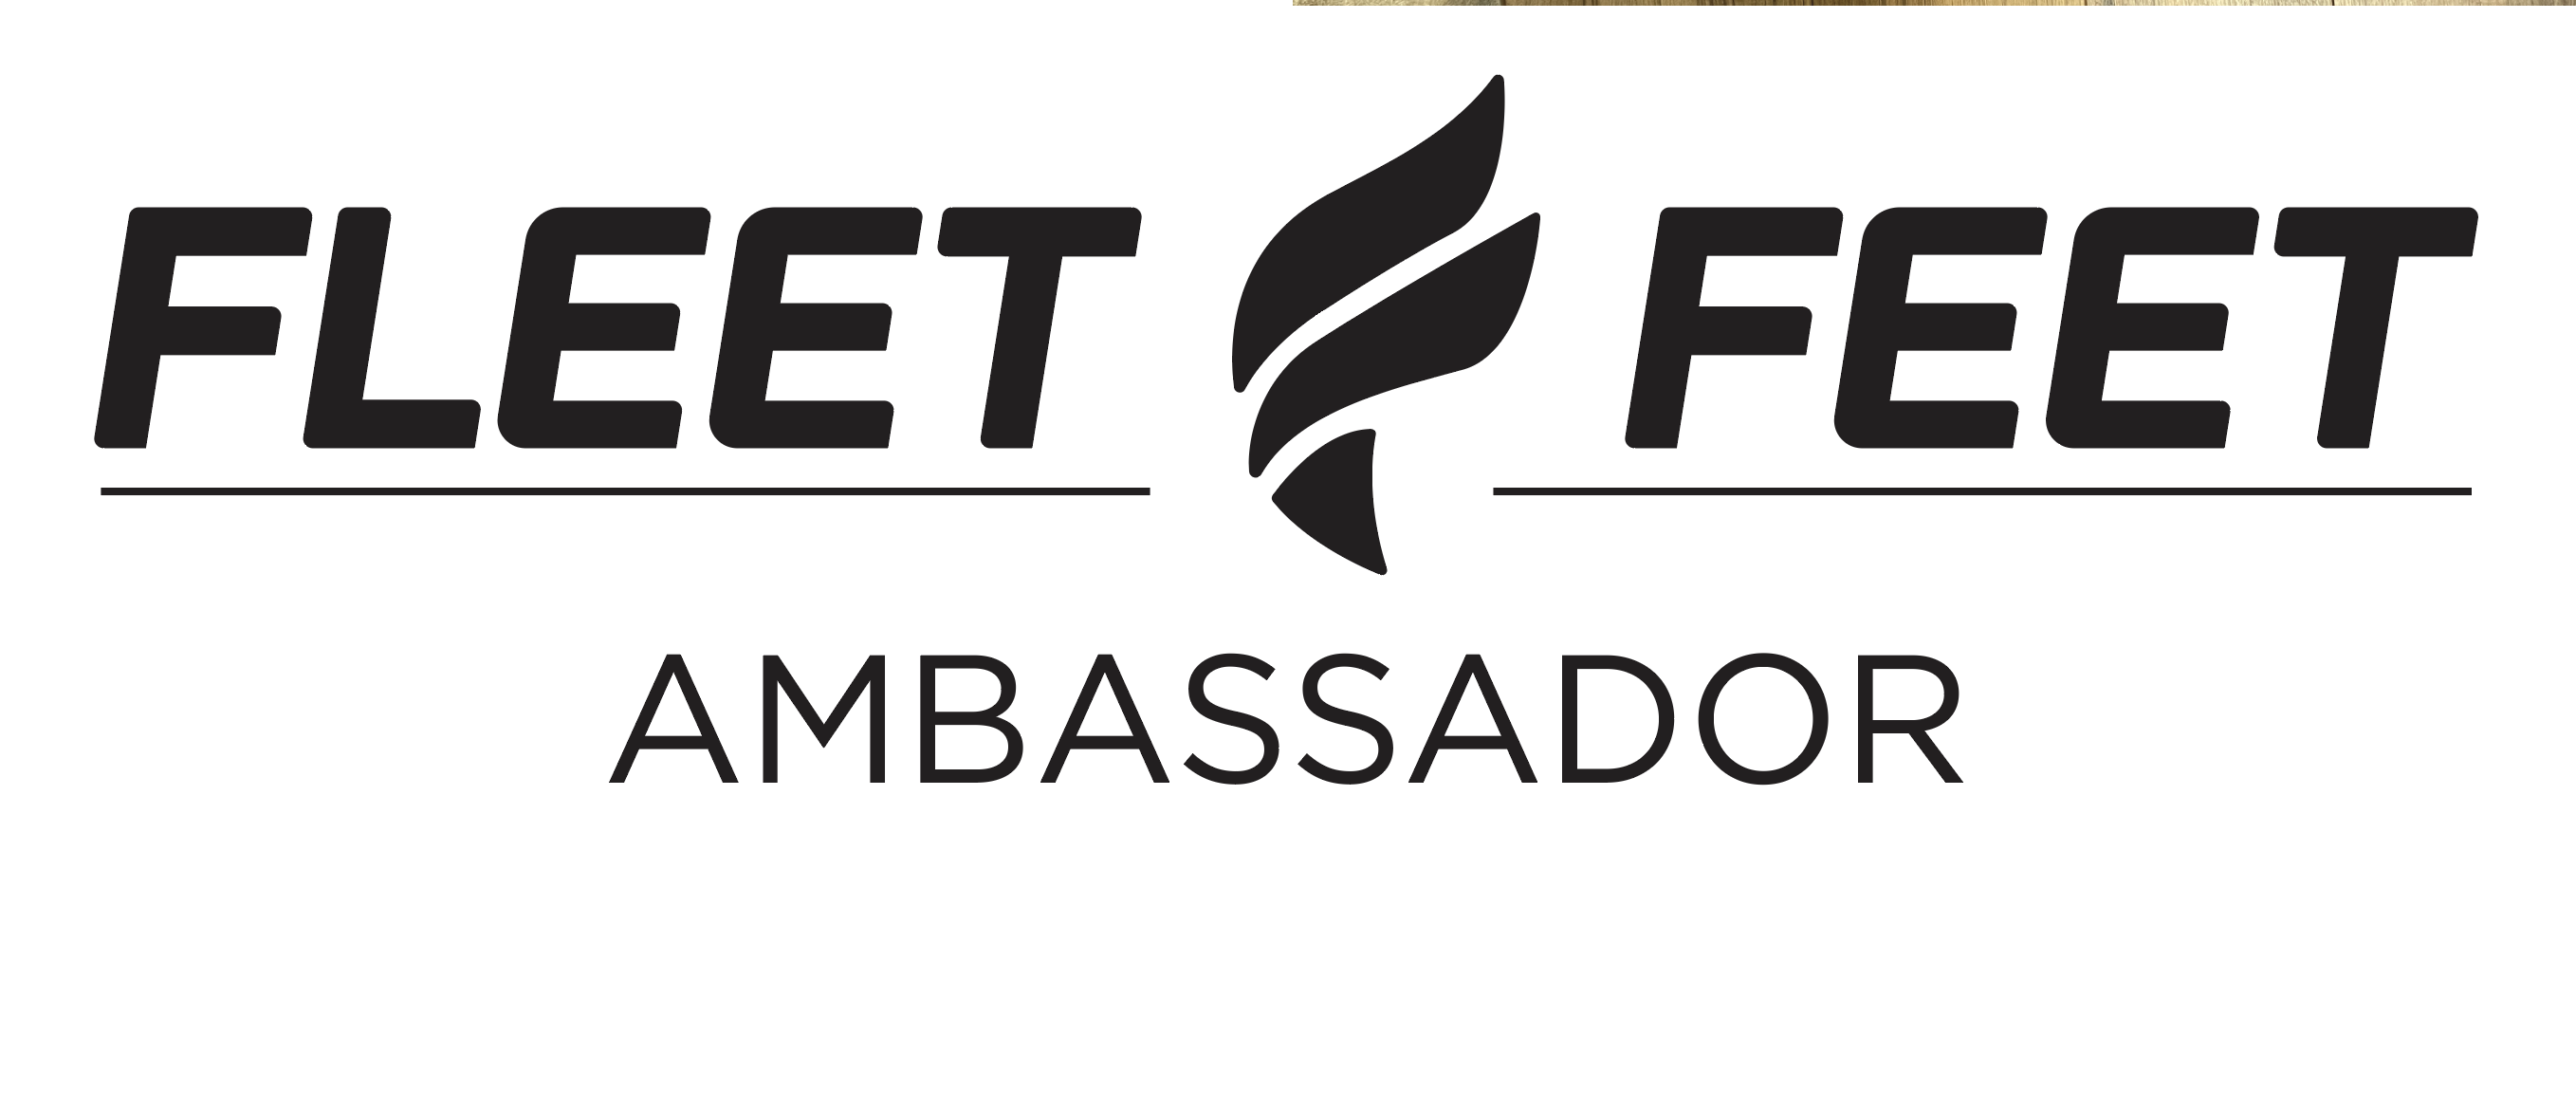 Fleet Feet Ambassador Team